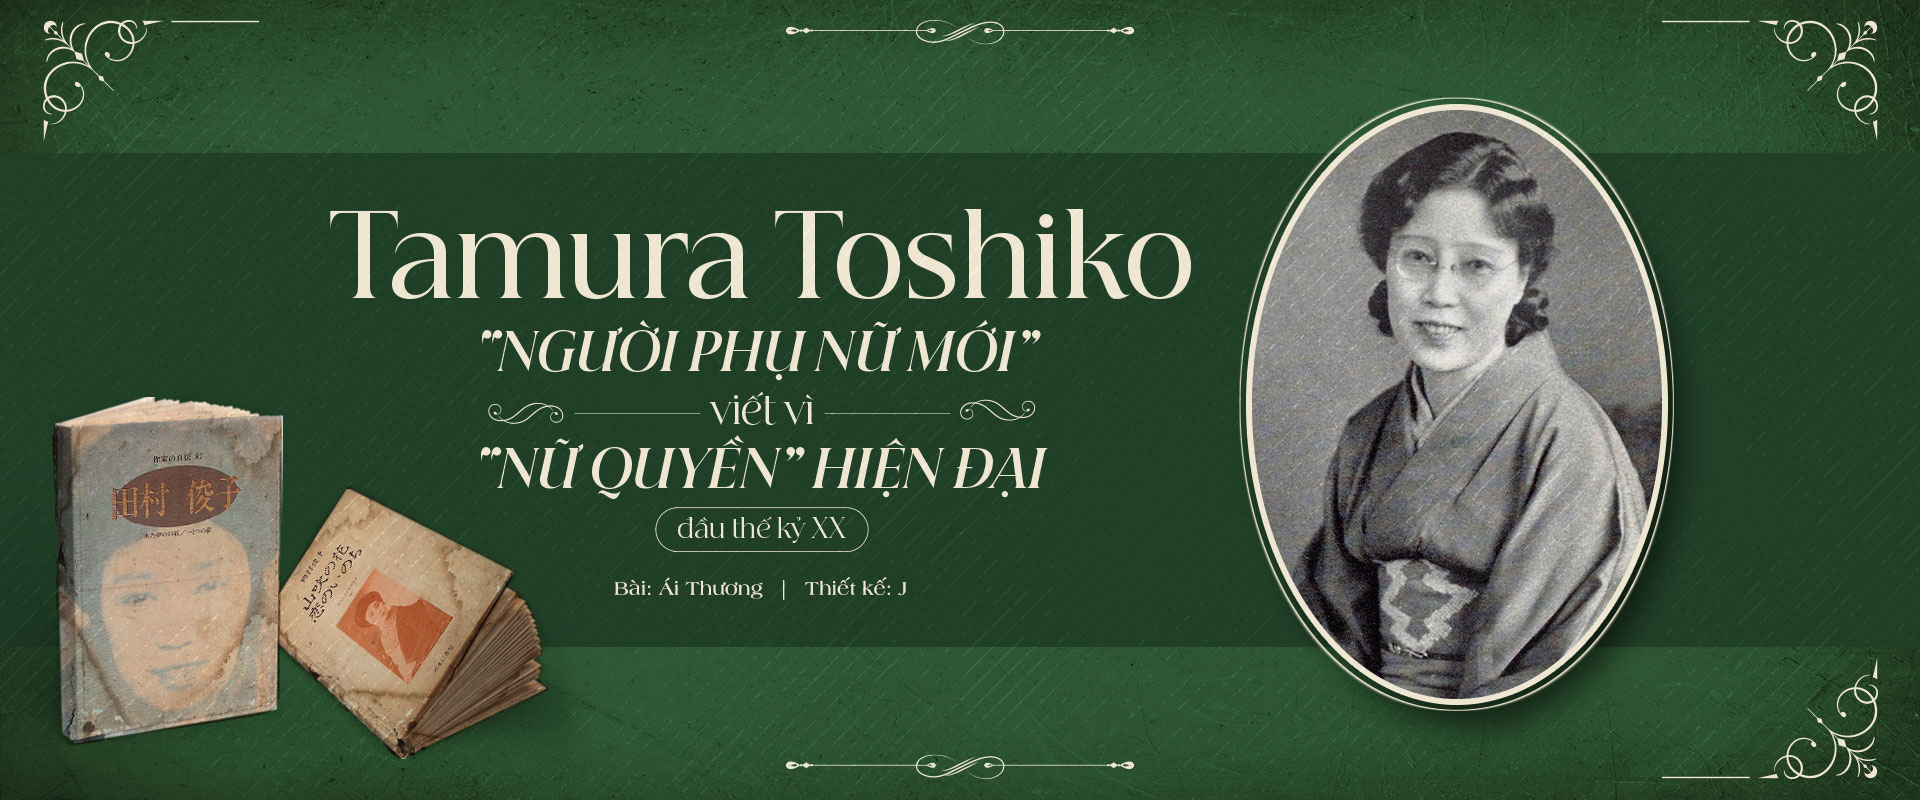 Tamura Toshiko: “Người phụ nữ mới” viết vì “nữ quyền” hiện đại đầu thế kỷ 20.